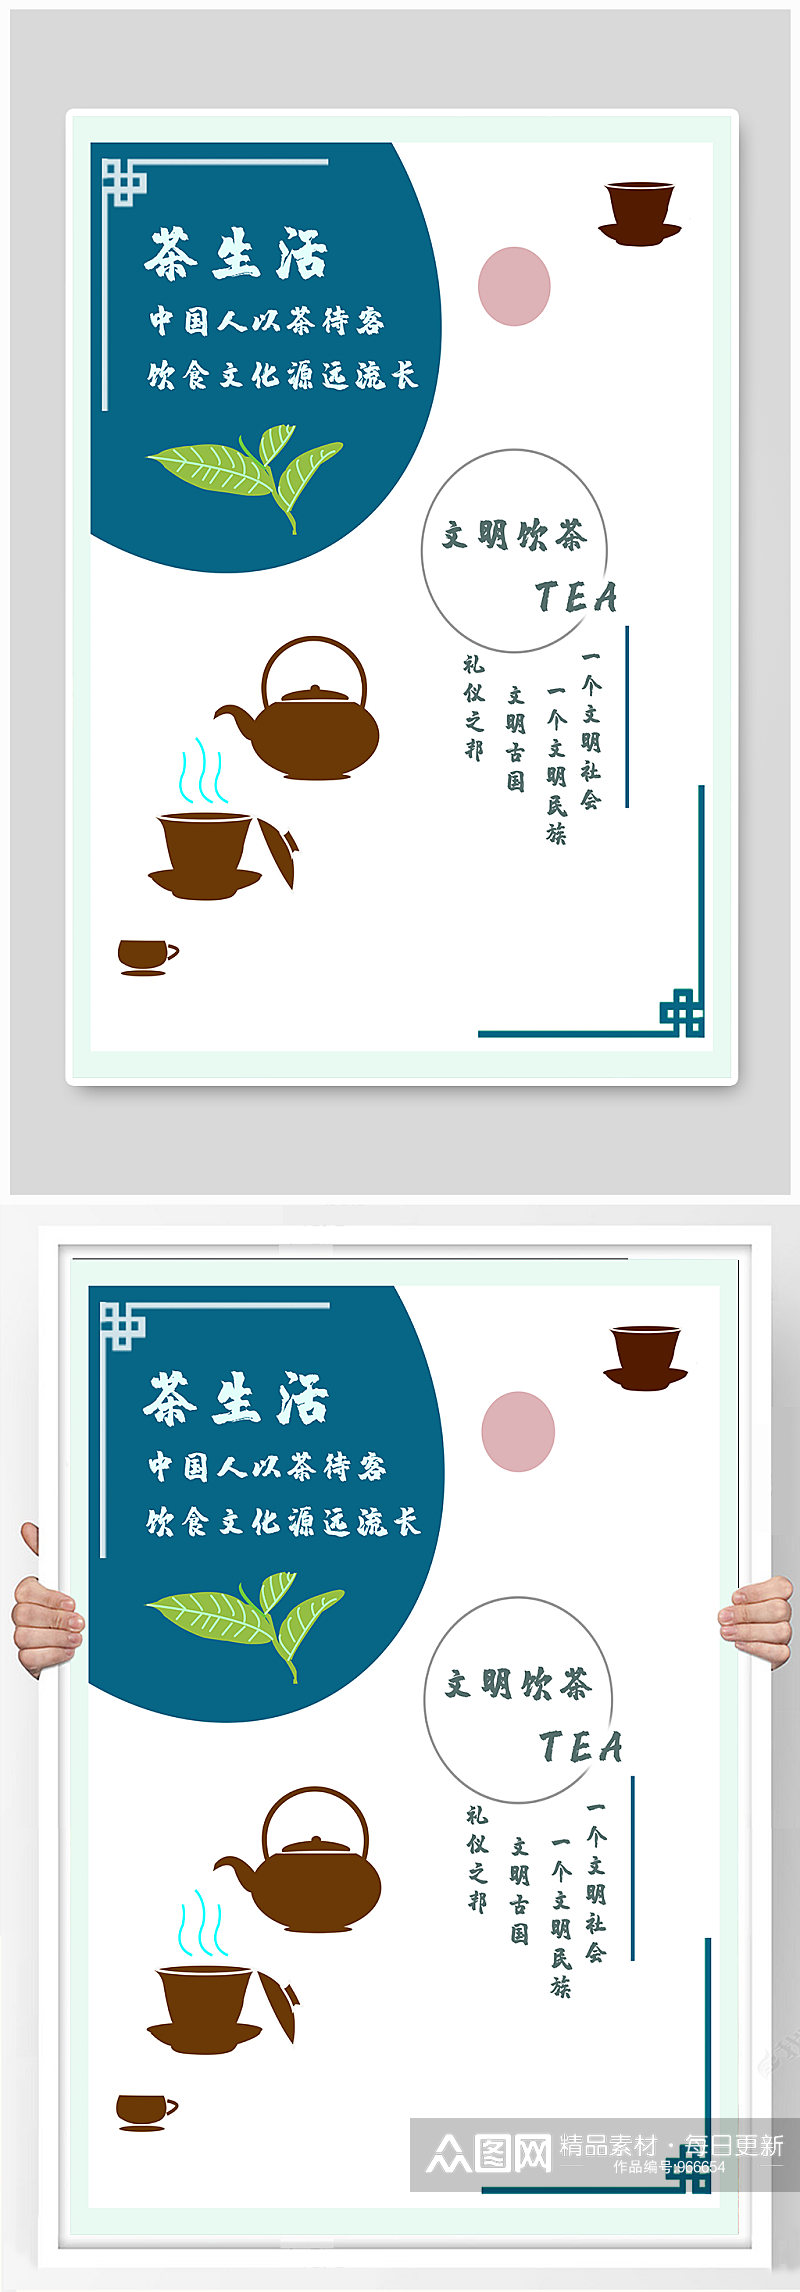 茶生活茶文化海报素材